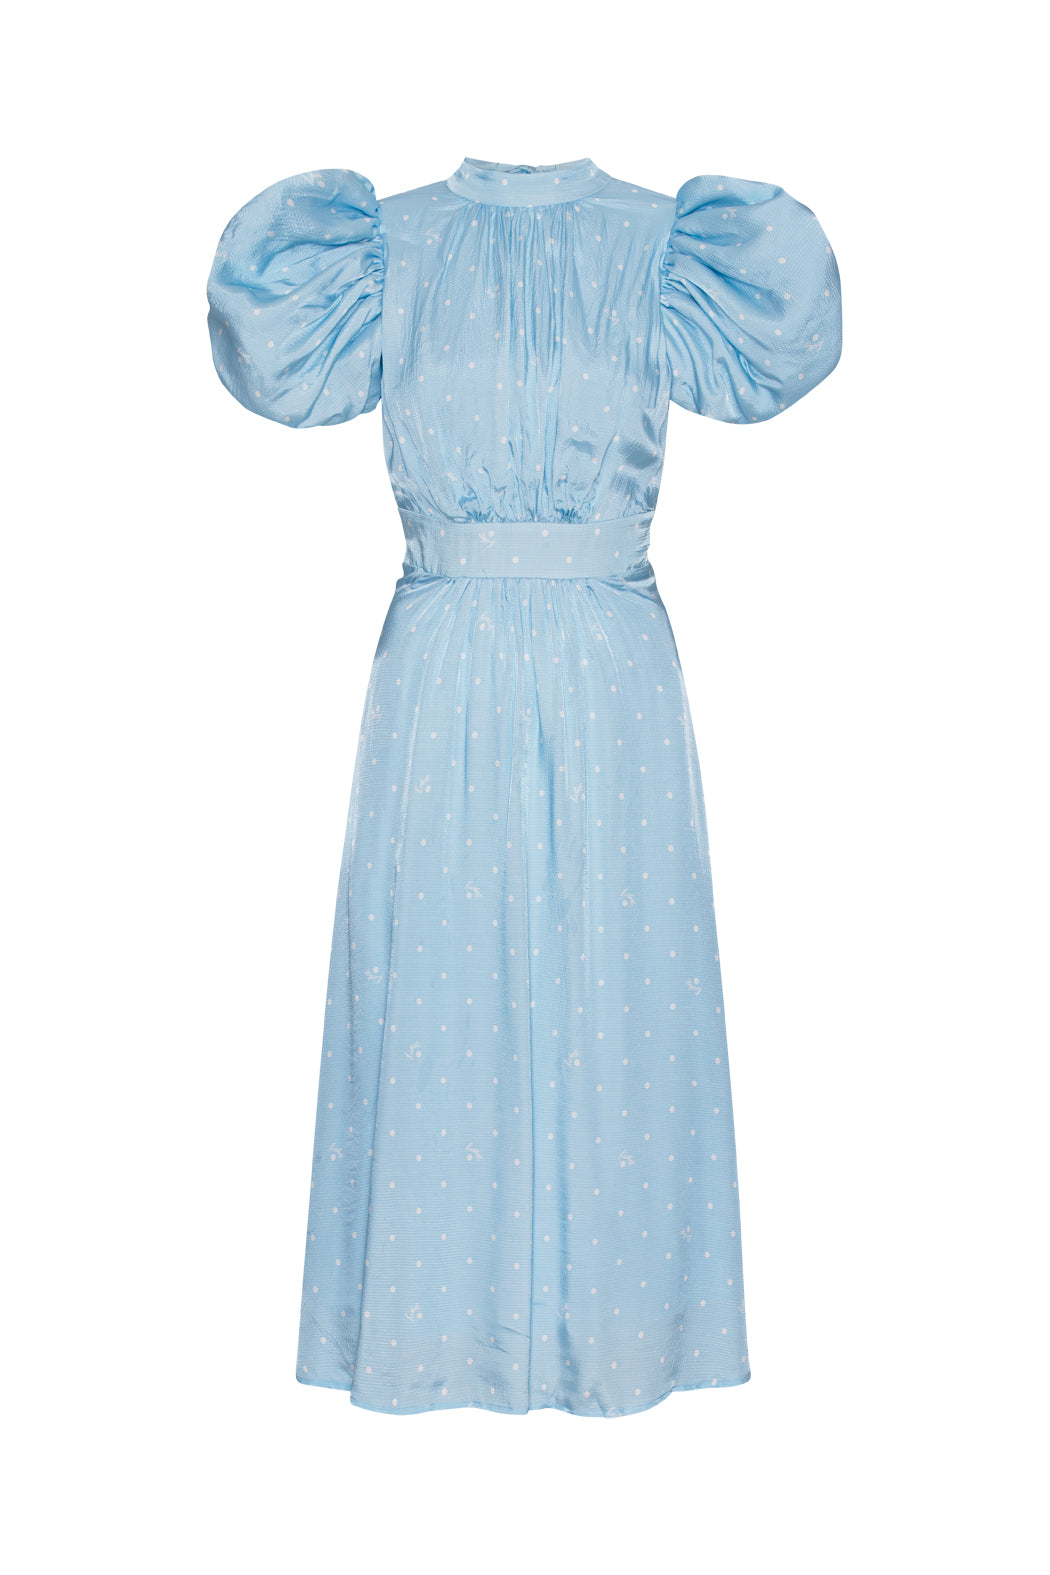 Textured Midi Puffy Dress - Oval Polka Dot / Cool Blue Comb